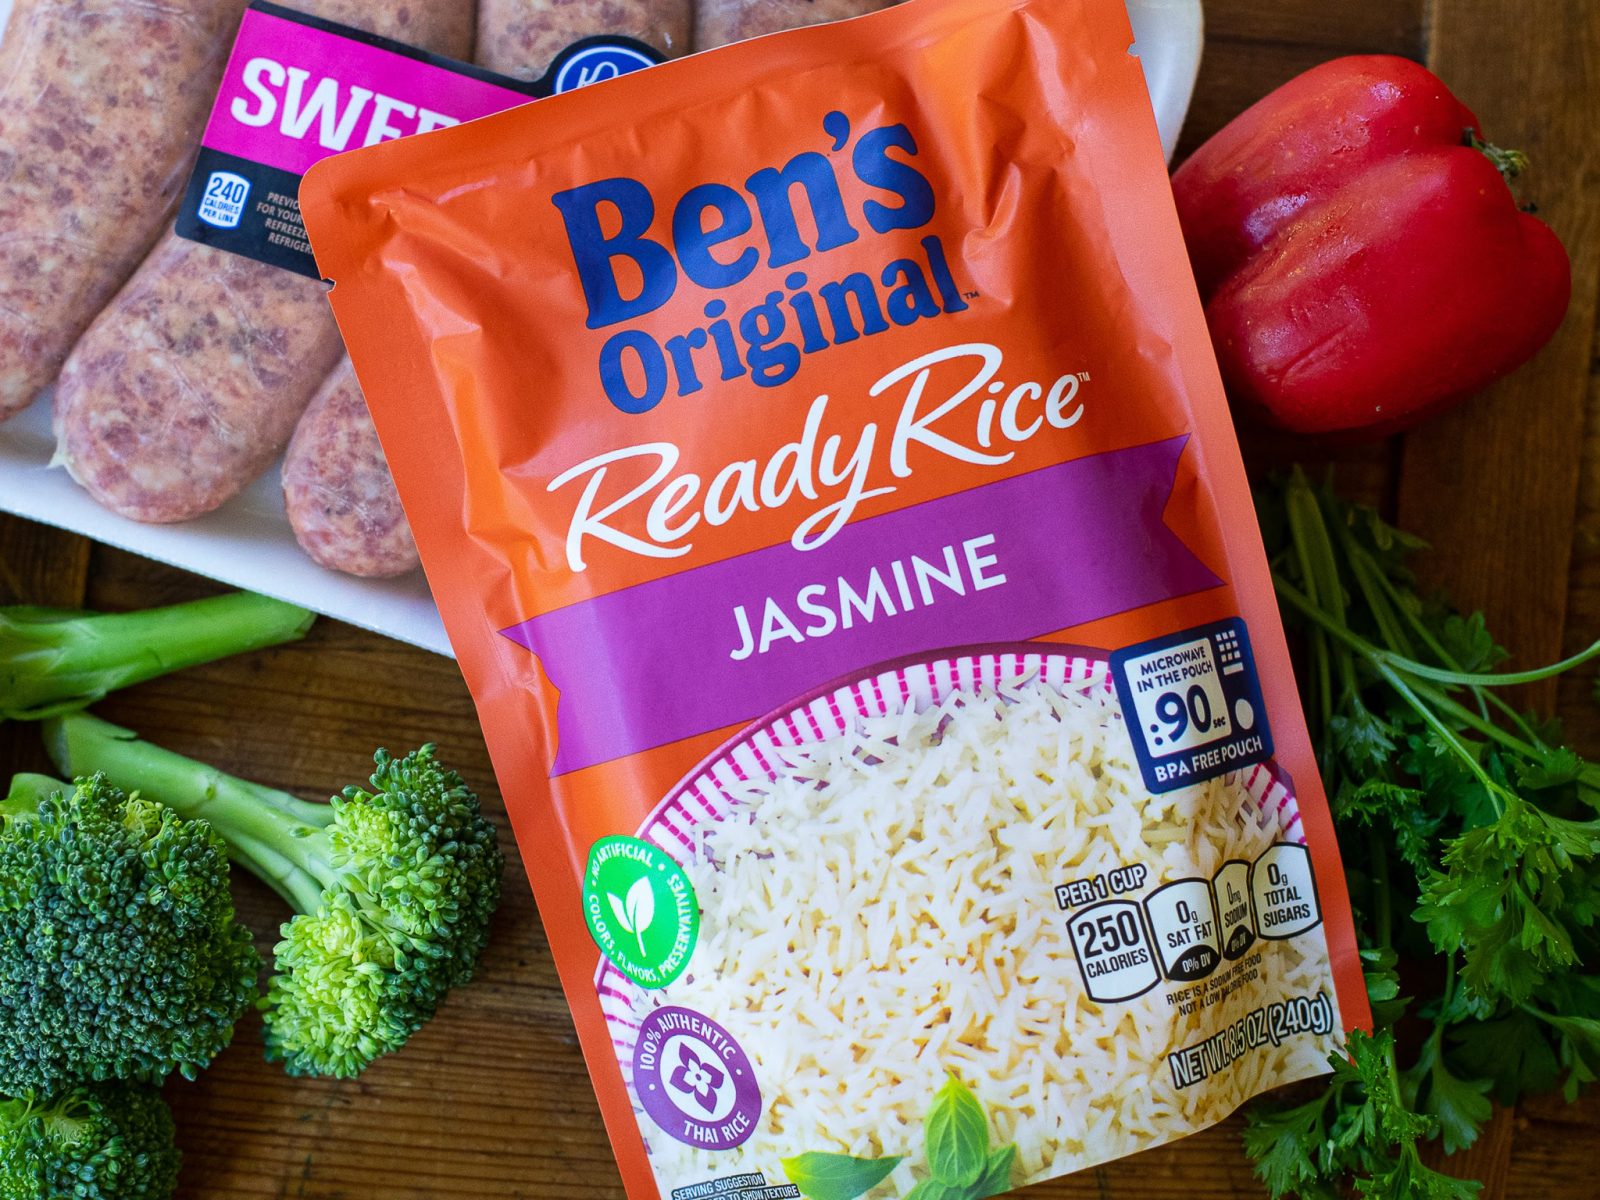 Ben’s Original Ready Rice As Low As $1.82 At Kroger